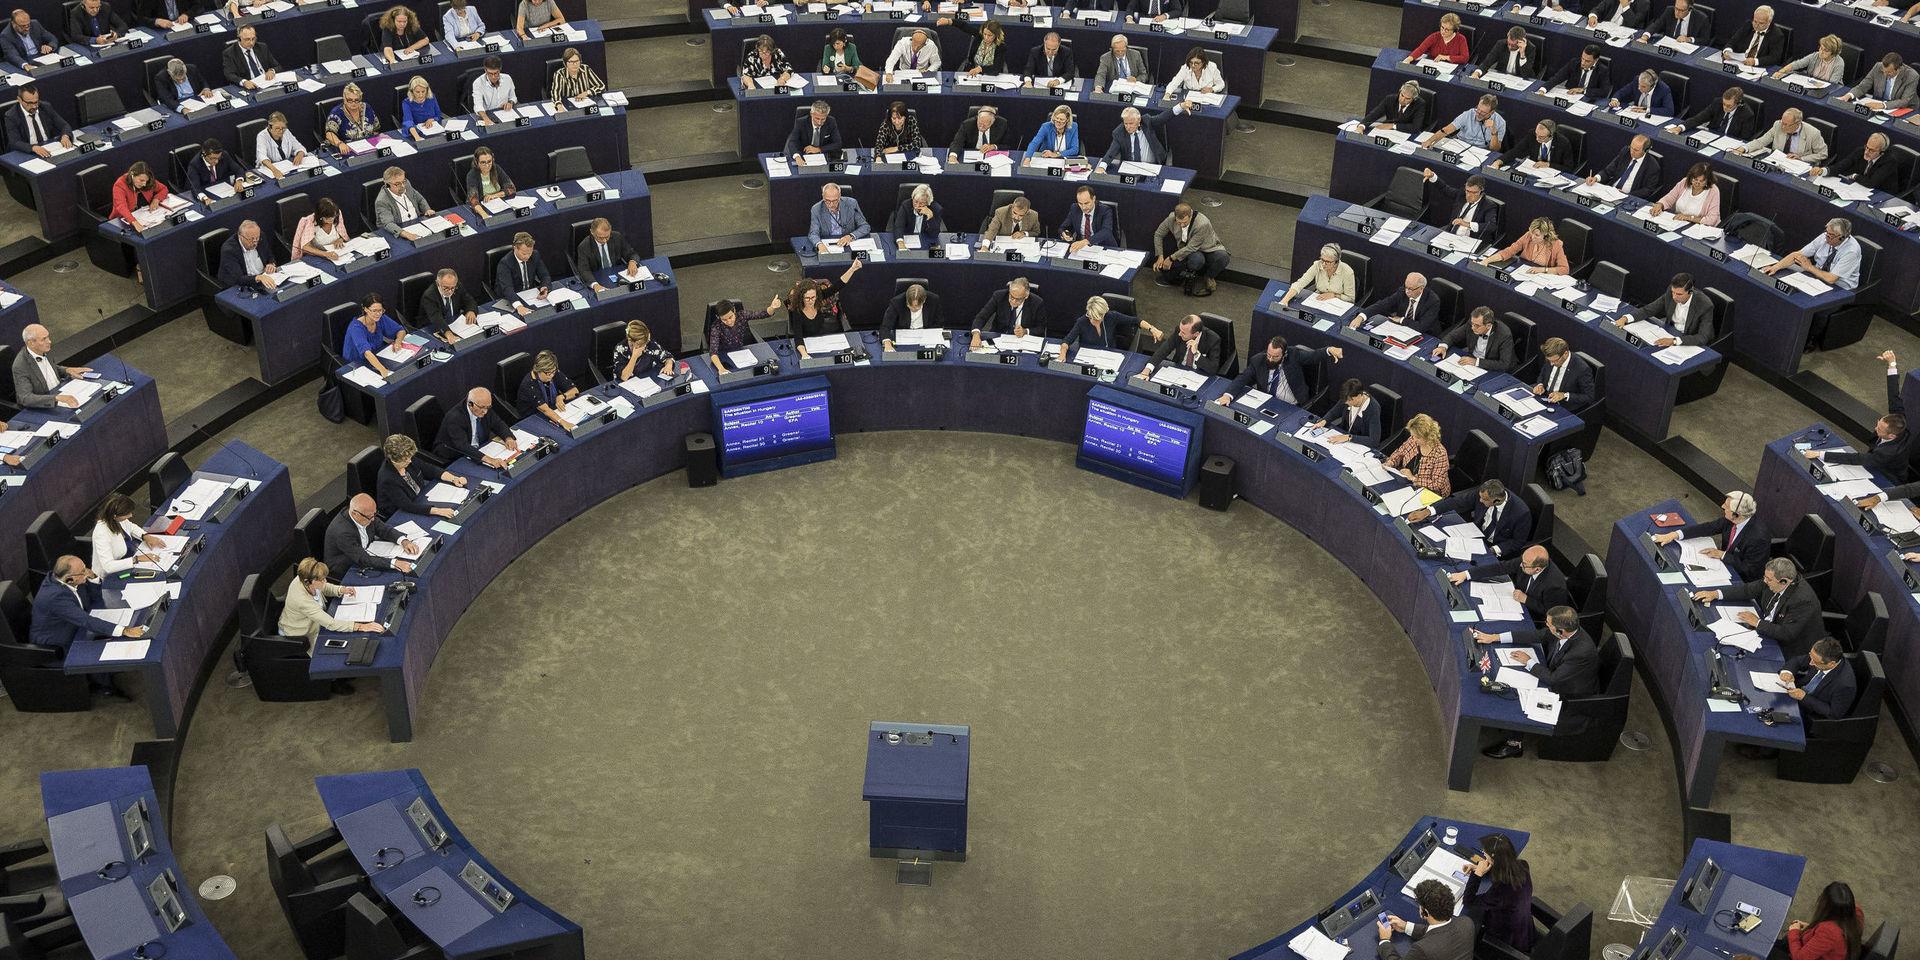 Kontroversiella förändringar. Europaparlamentet röstade ja till länkskatt och till ett förbud mot att filma och fotografera sportevent under onsdagen.